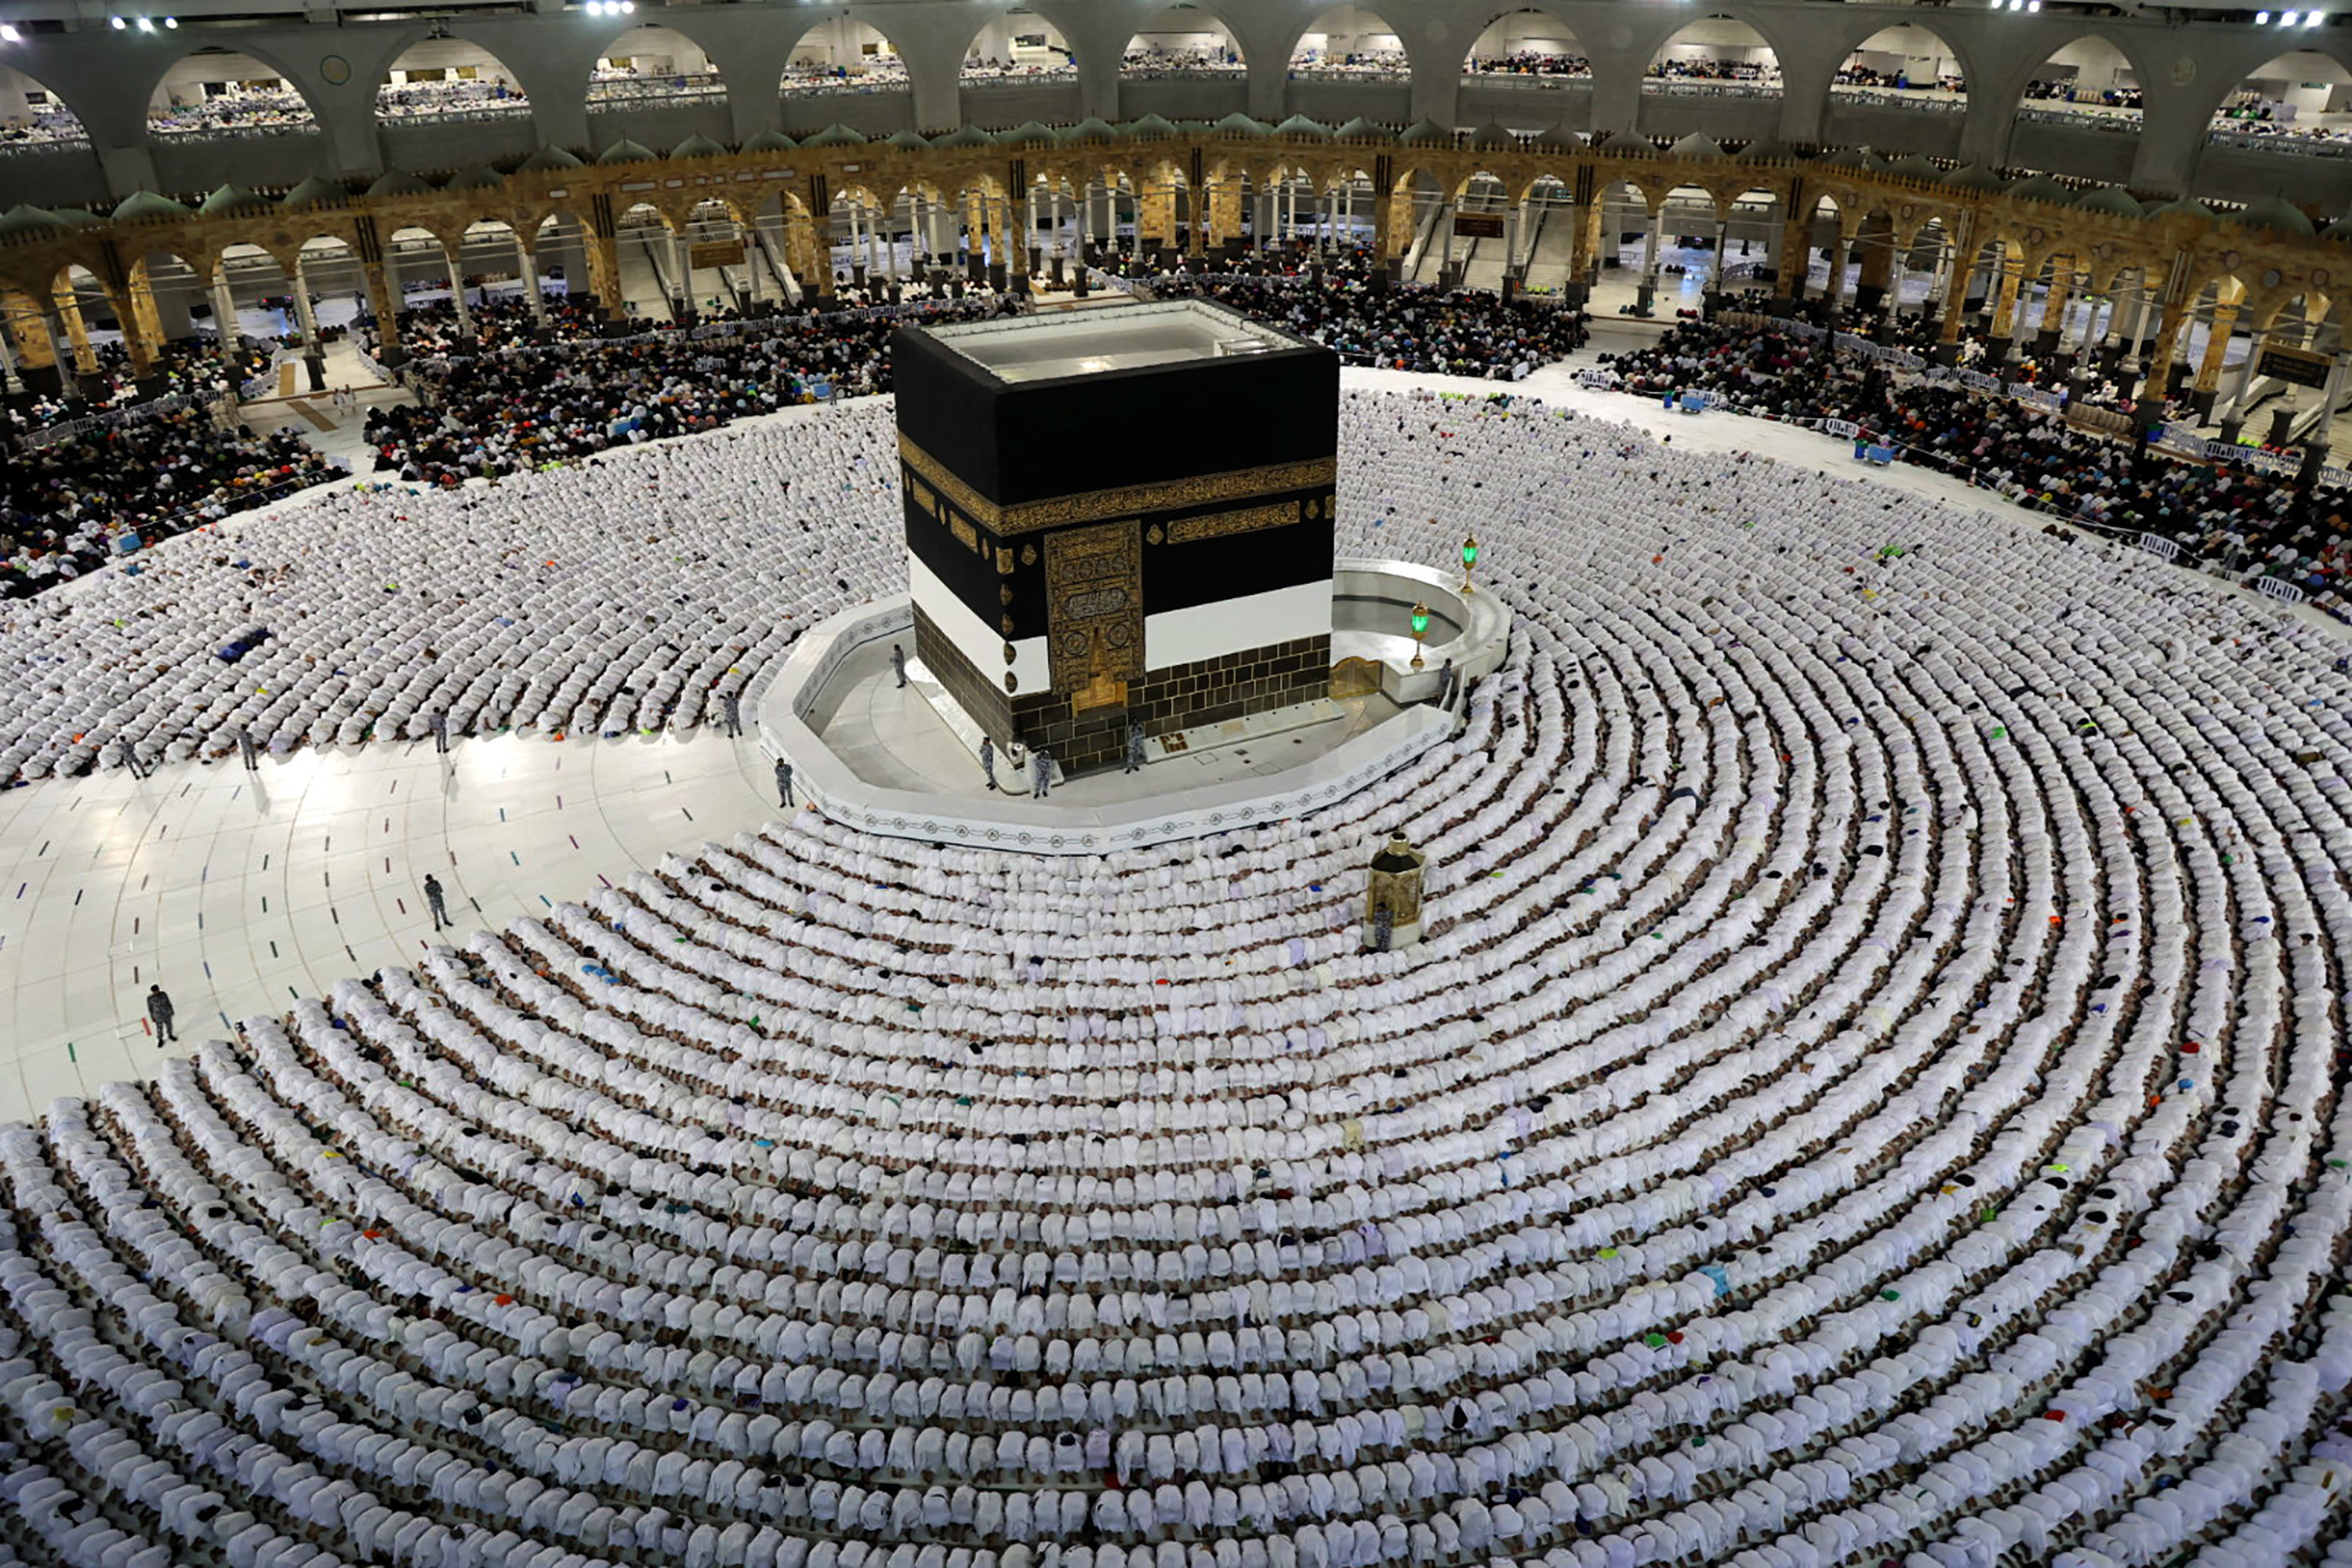 Furia desatada: Periodista judío logró entrar a la Meca, el sitio sagrado del islam que prohíbe el ingreso a los no musulmanes